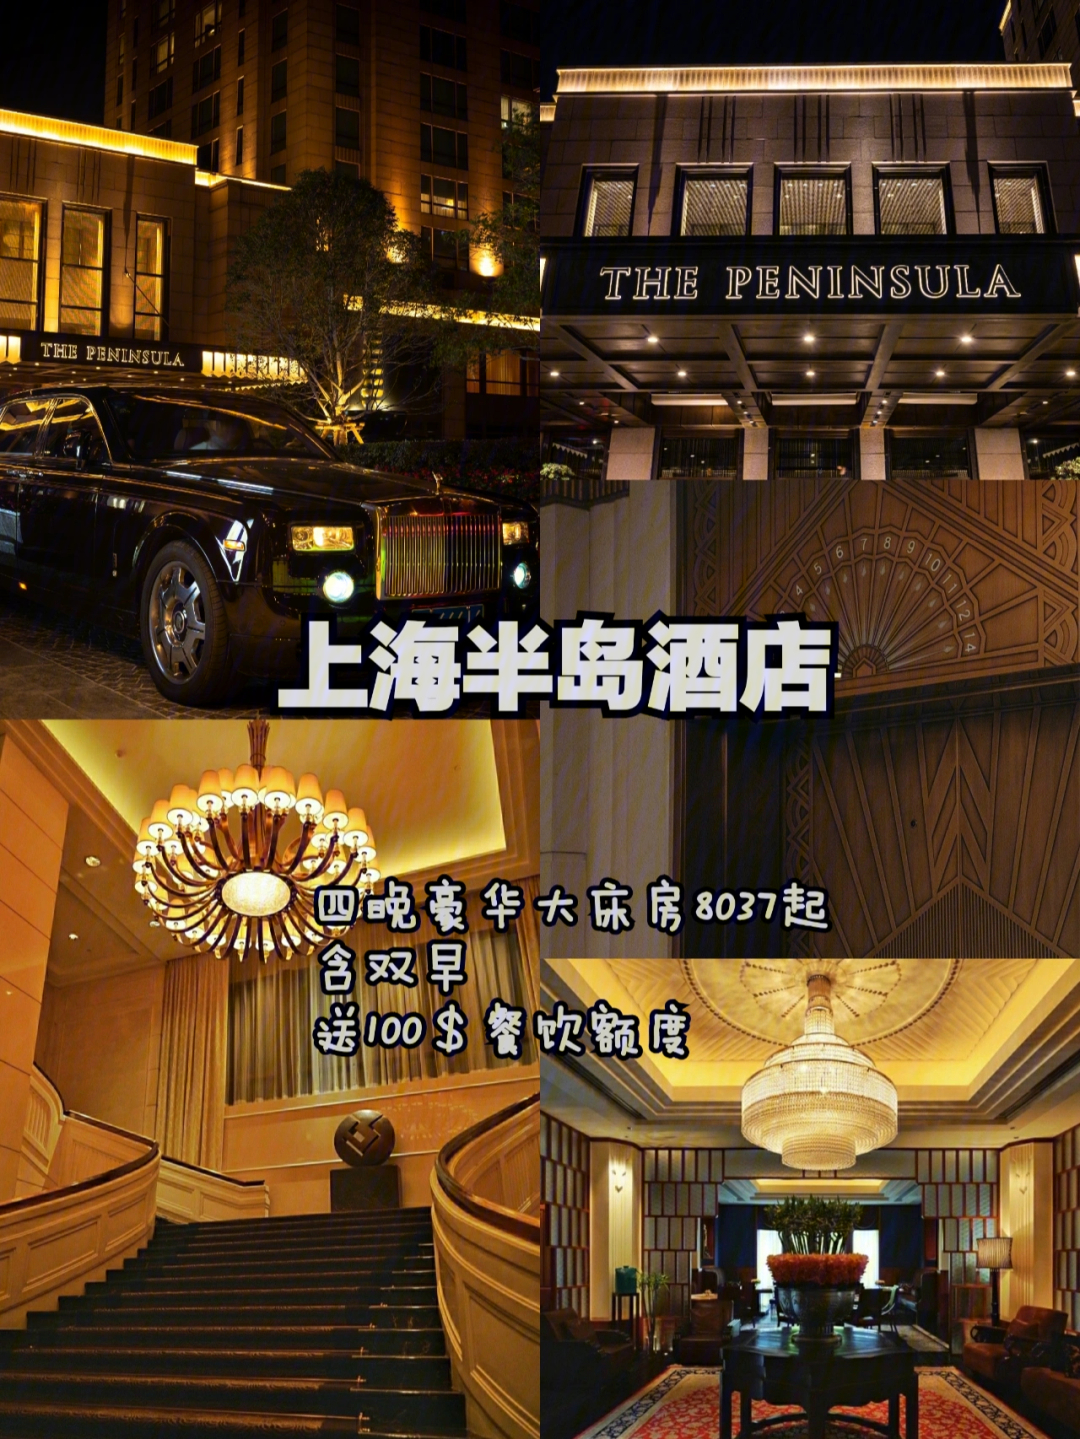 从2009年开始营业,细细数来如今的上海半岛酒店已走过了十多个年头